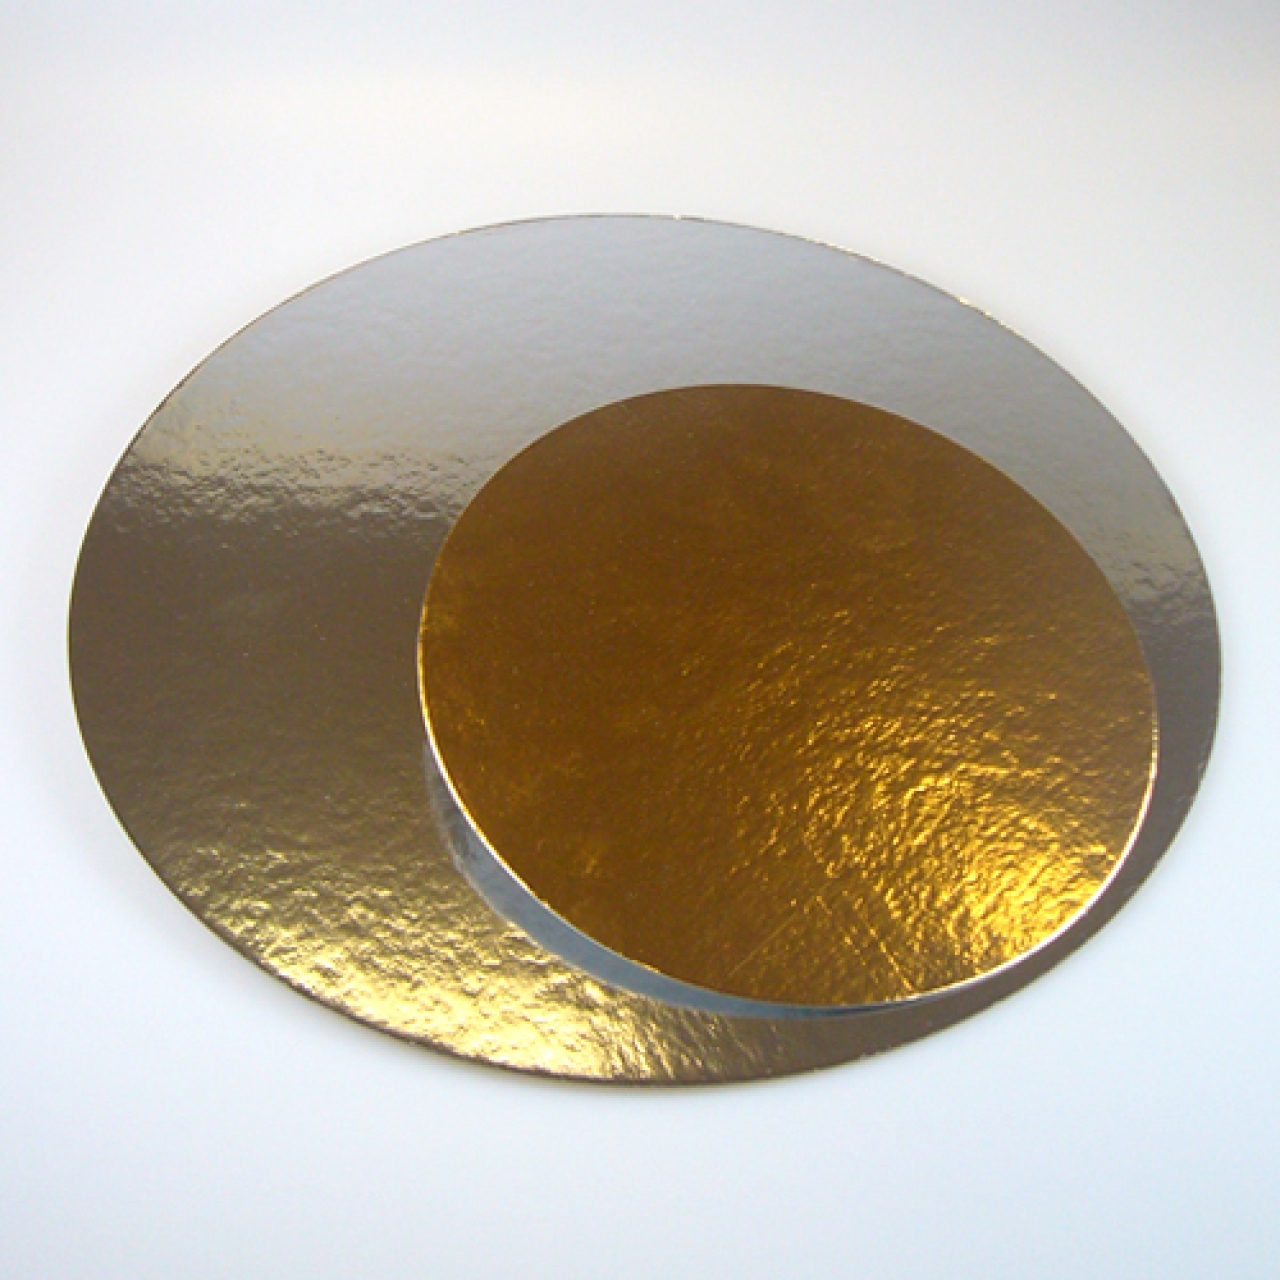 Tortenscheibe, Tortenboden gold & silber (beideseitig) ca. 20 cm, rund, 3 Stk.